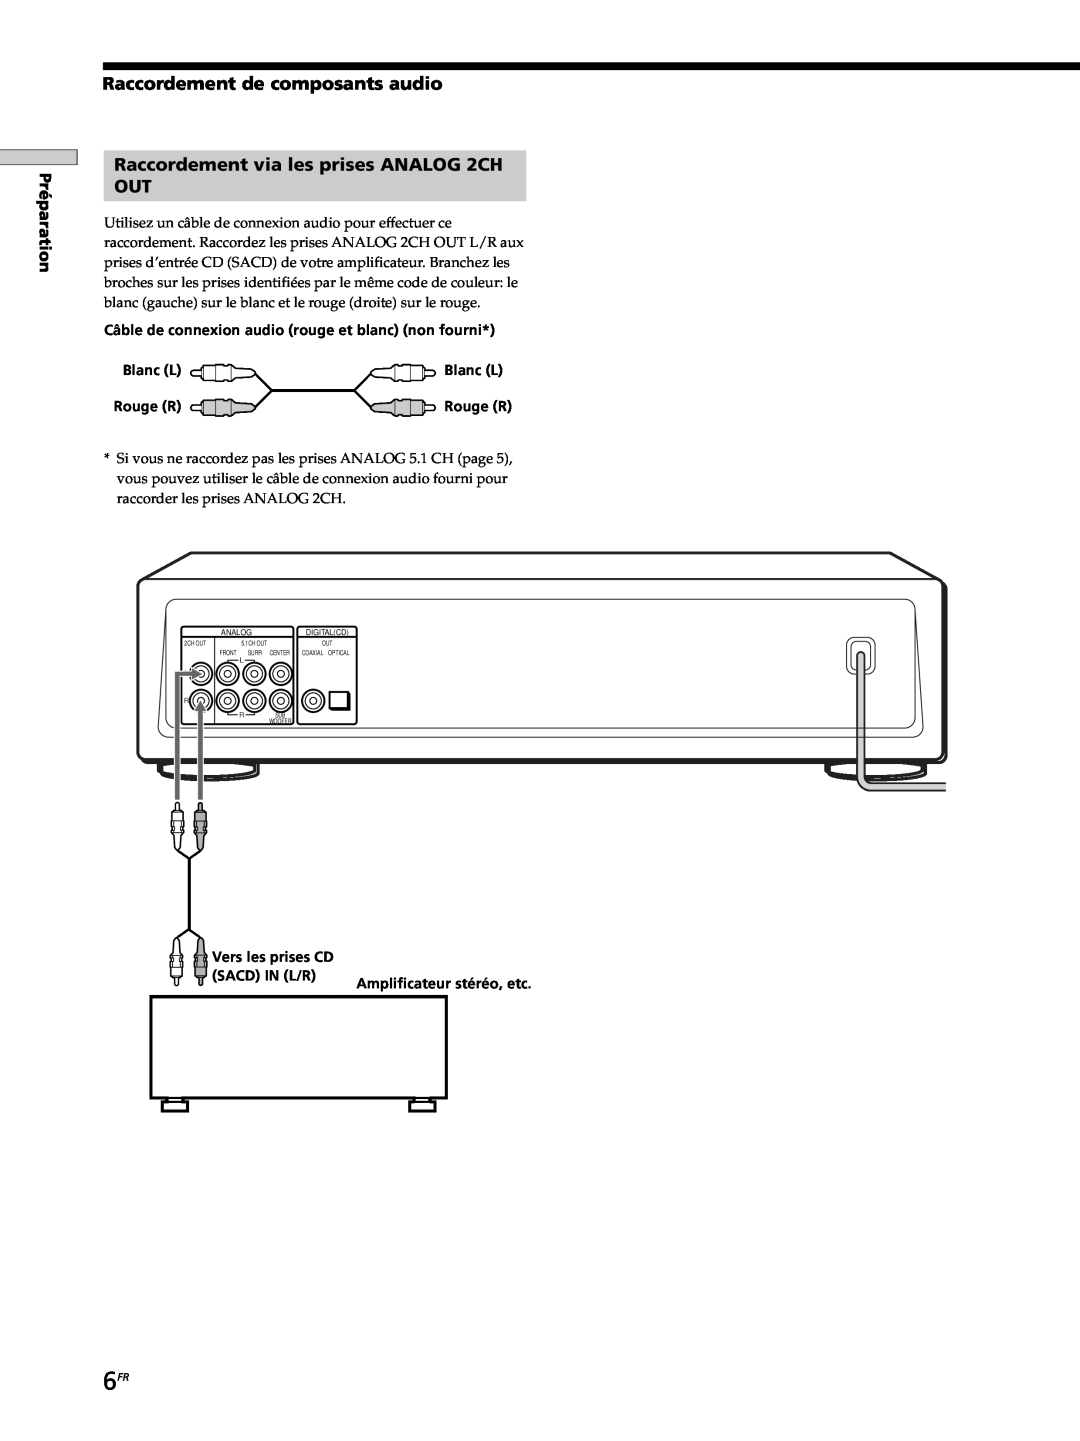 Sony SCD-XB770 Raccordement de composants audio, Raccordement via les prises ANALOG 2CH OUT, Blanc L, Vers les prises CD 